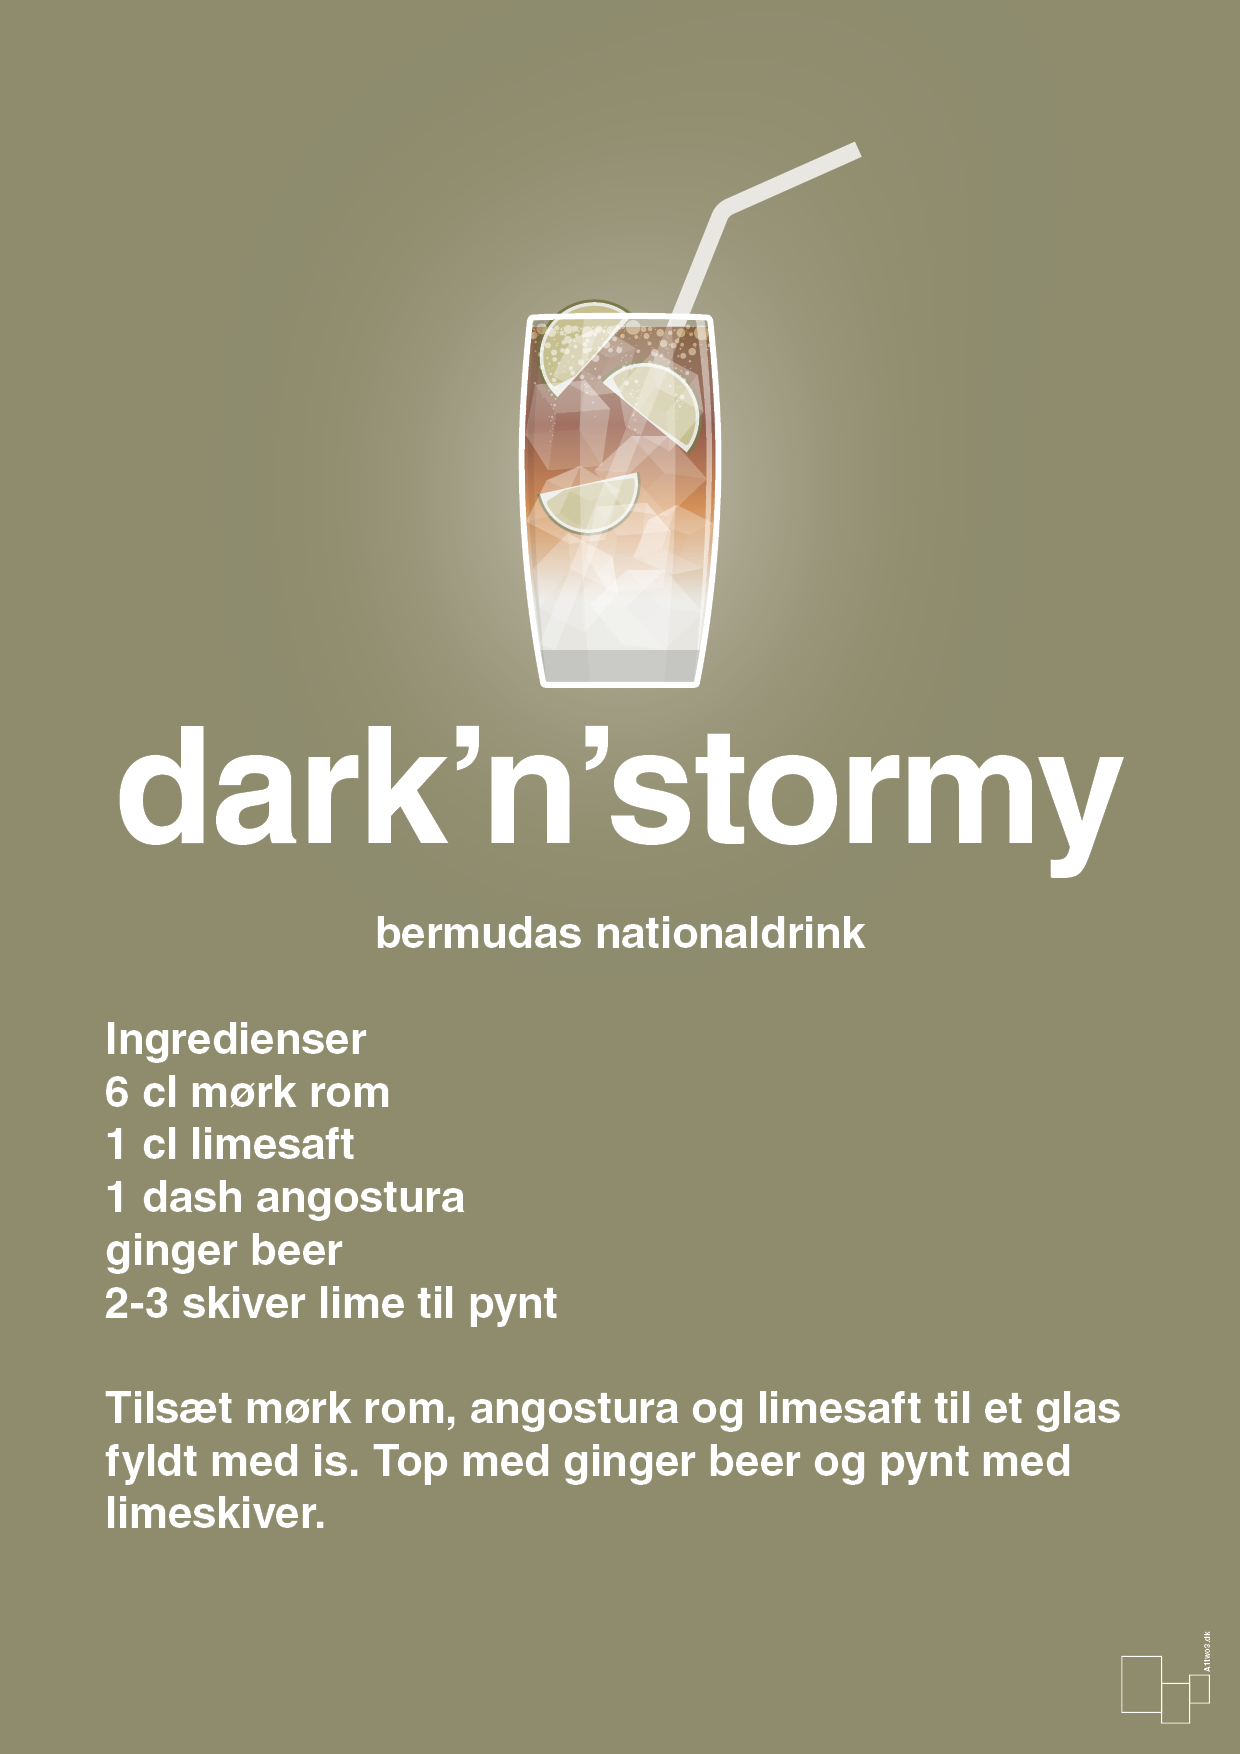 plakat: dark'n'stormy